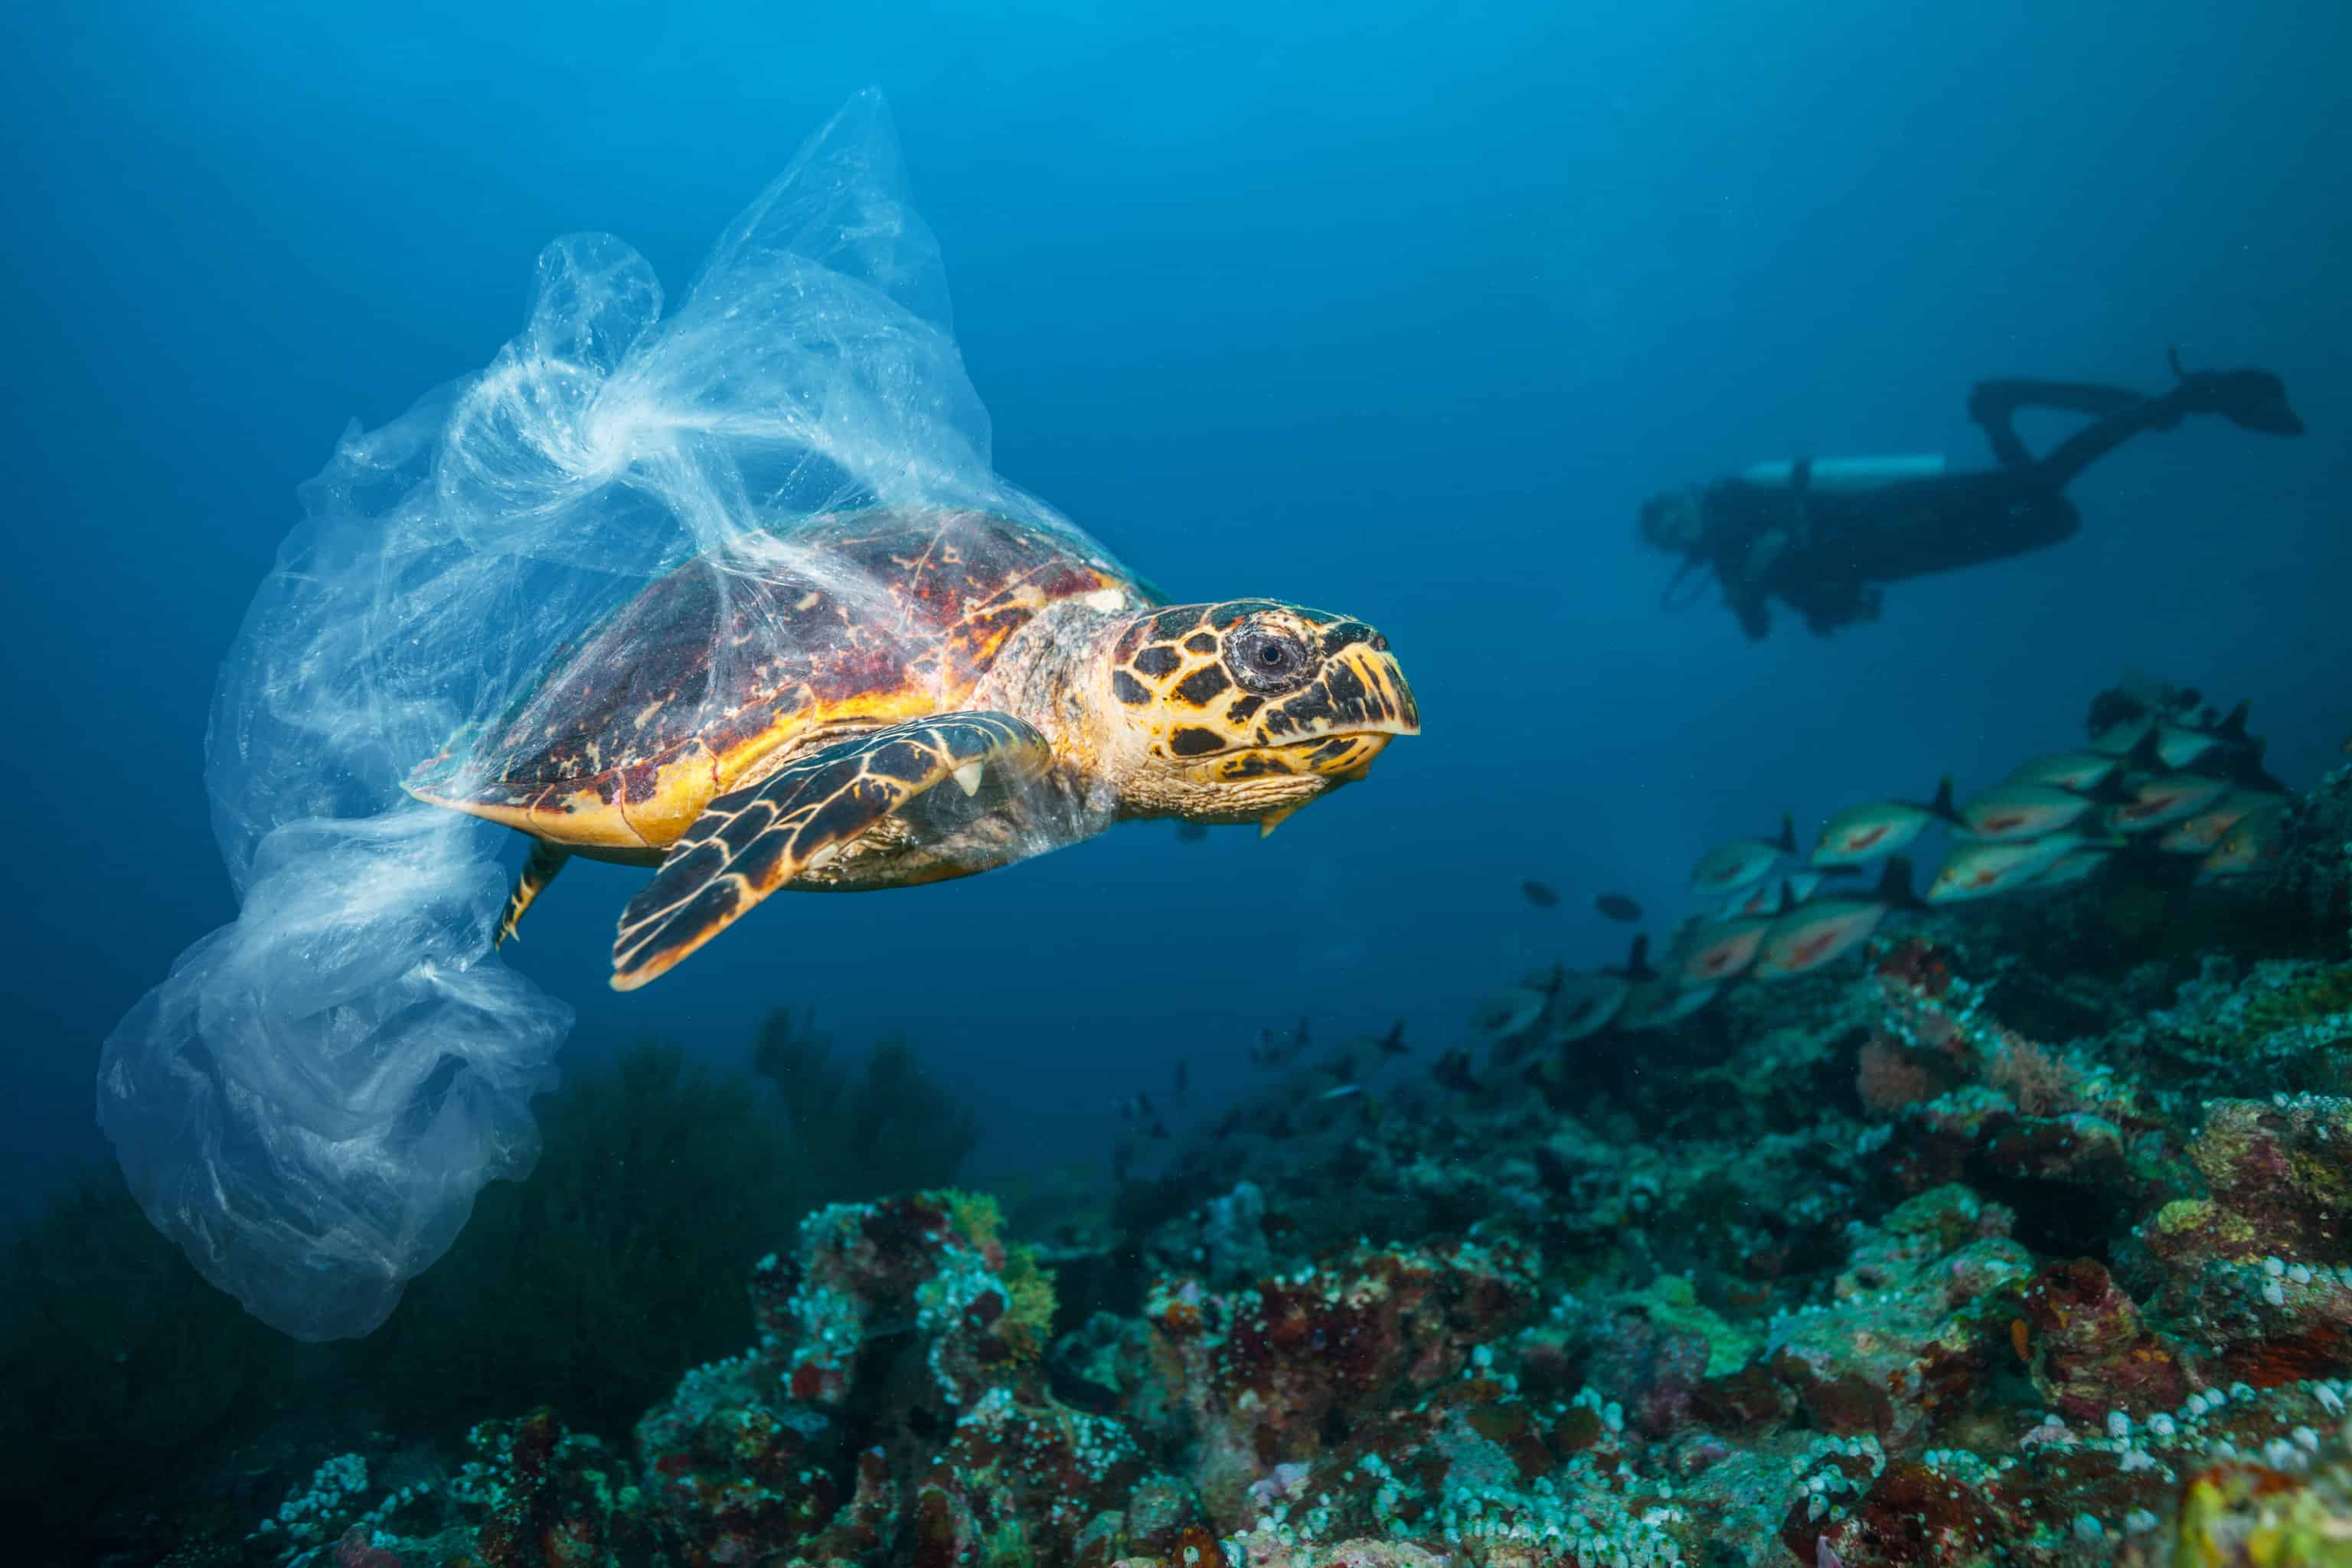 Plastic killing wildlife